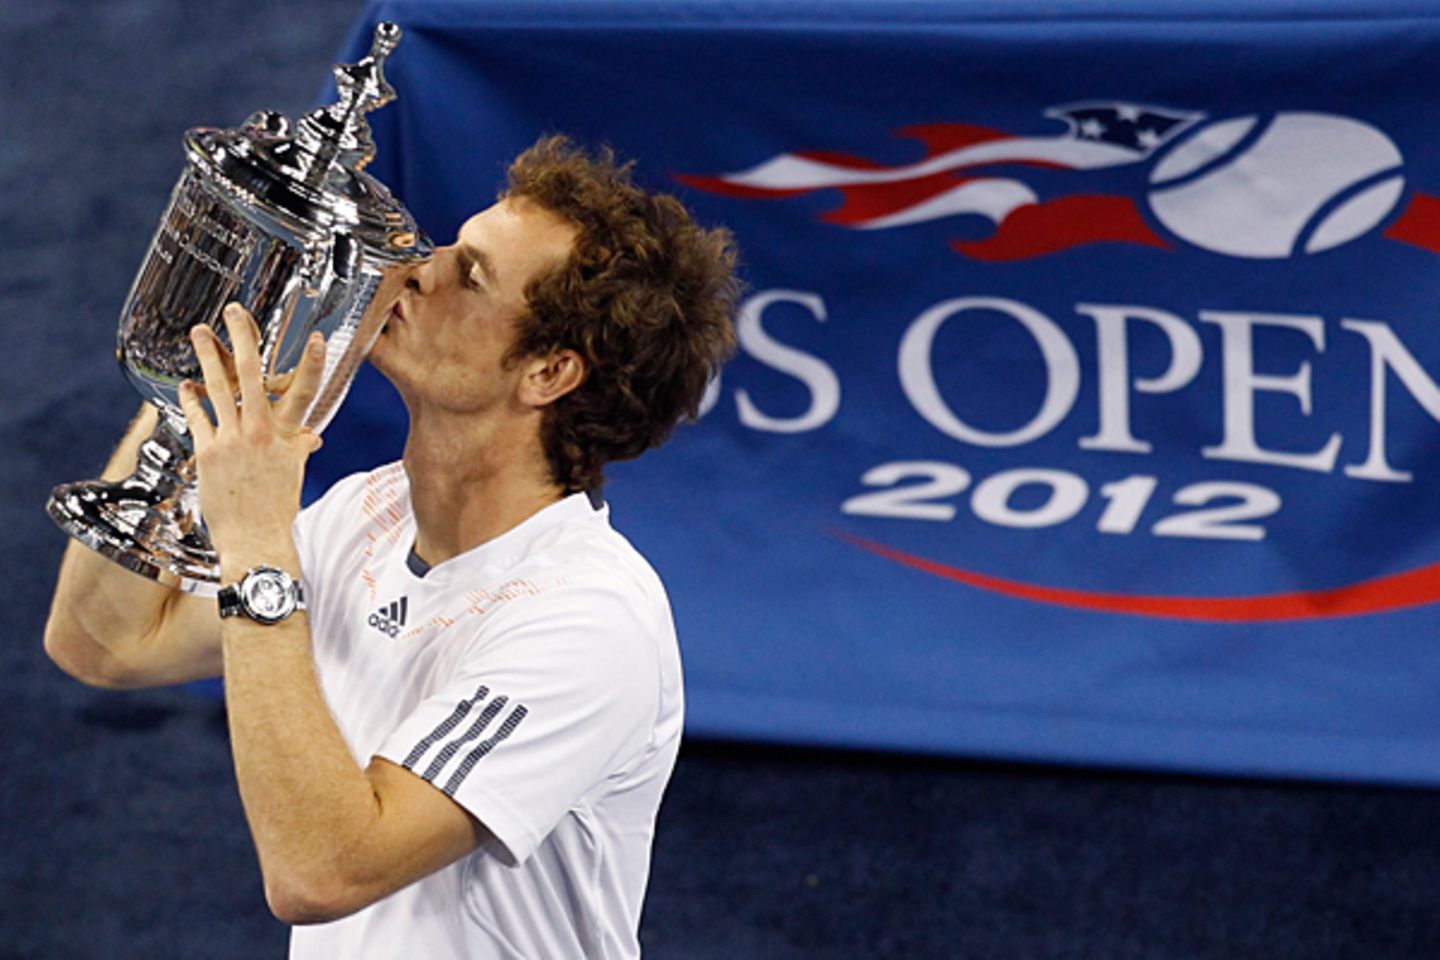 Der Schotte Andy Murray gewinnt seinen ersten Grand-Slam-Titel in einem spannenden fünf-Satz-Krimi gegen den Serben Novac Djokov